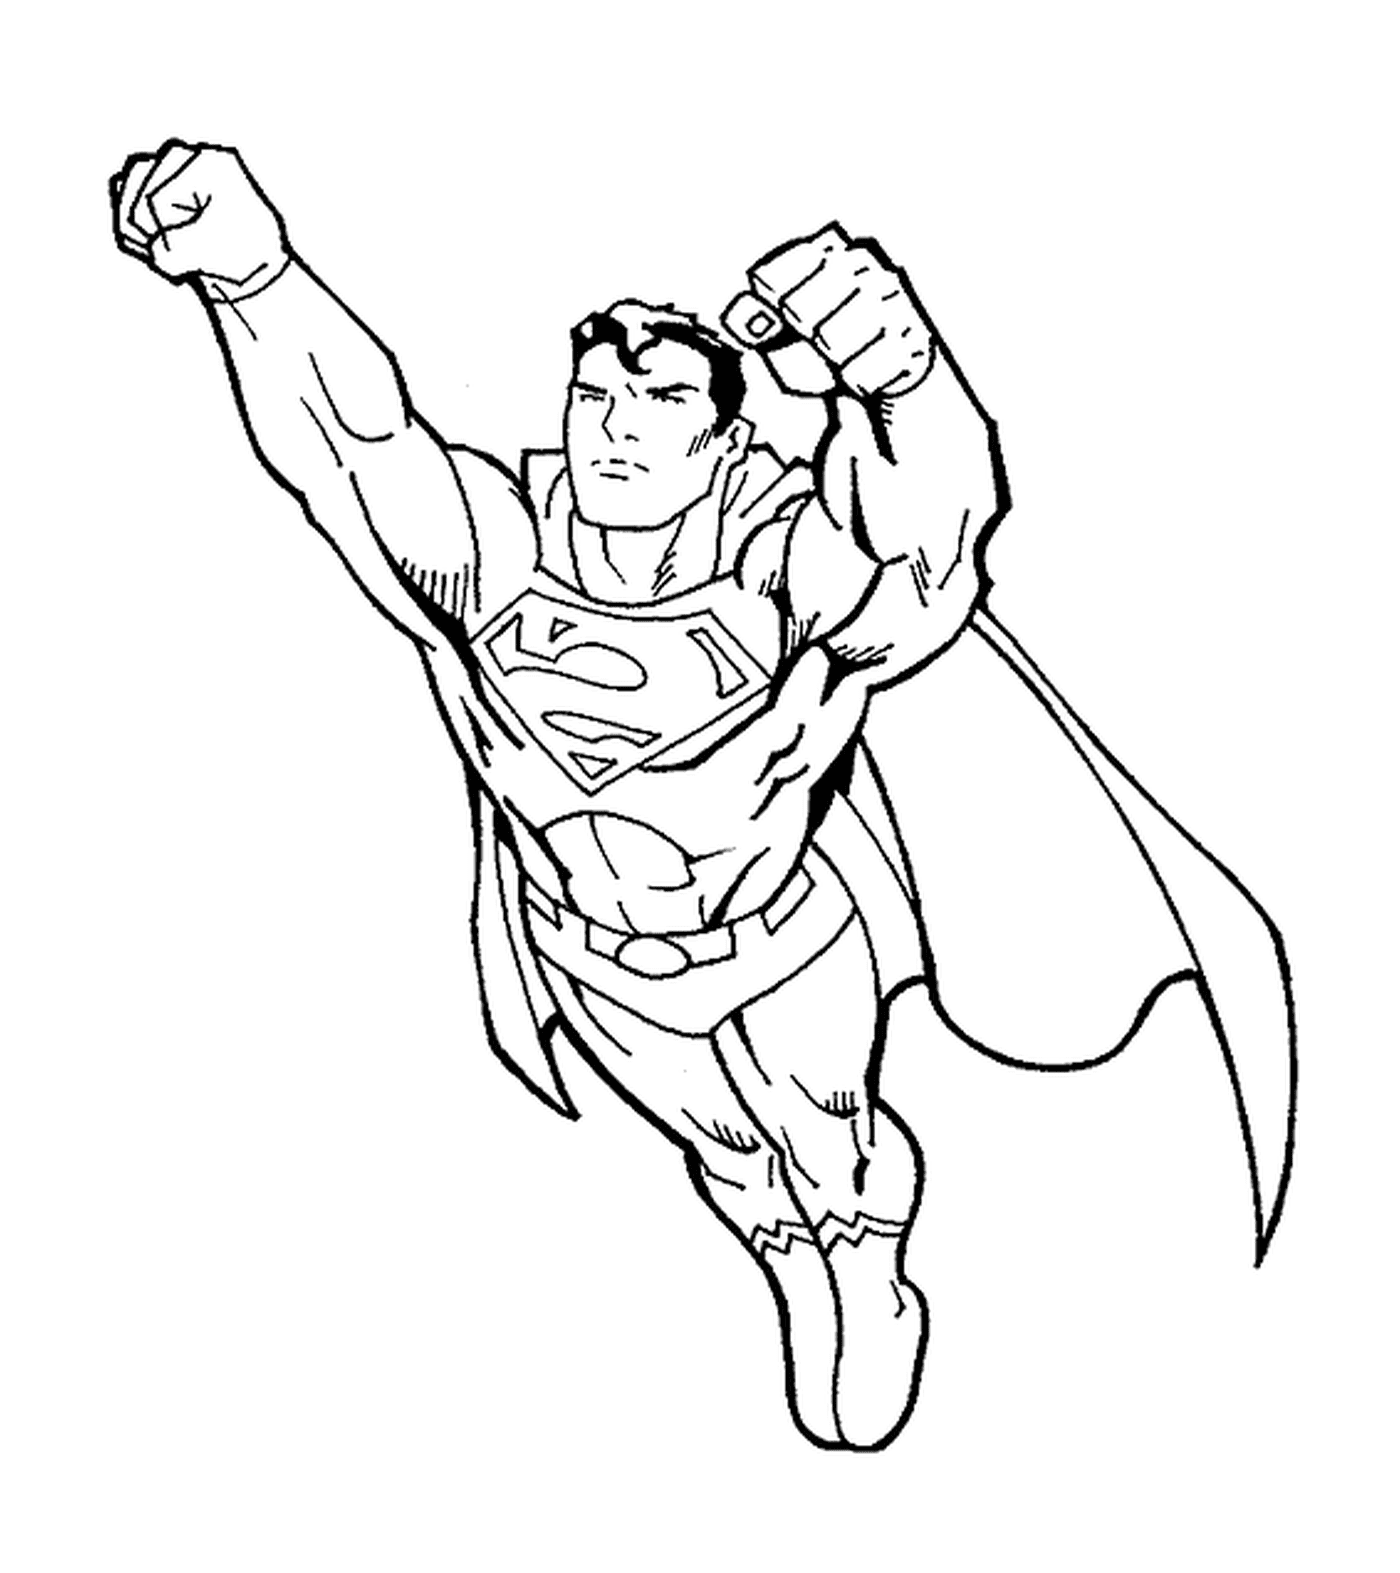  Superman, los puños hacia adelante 